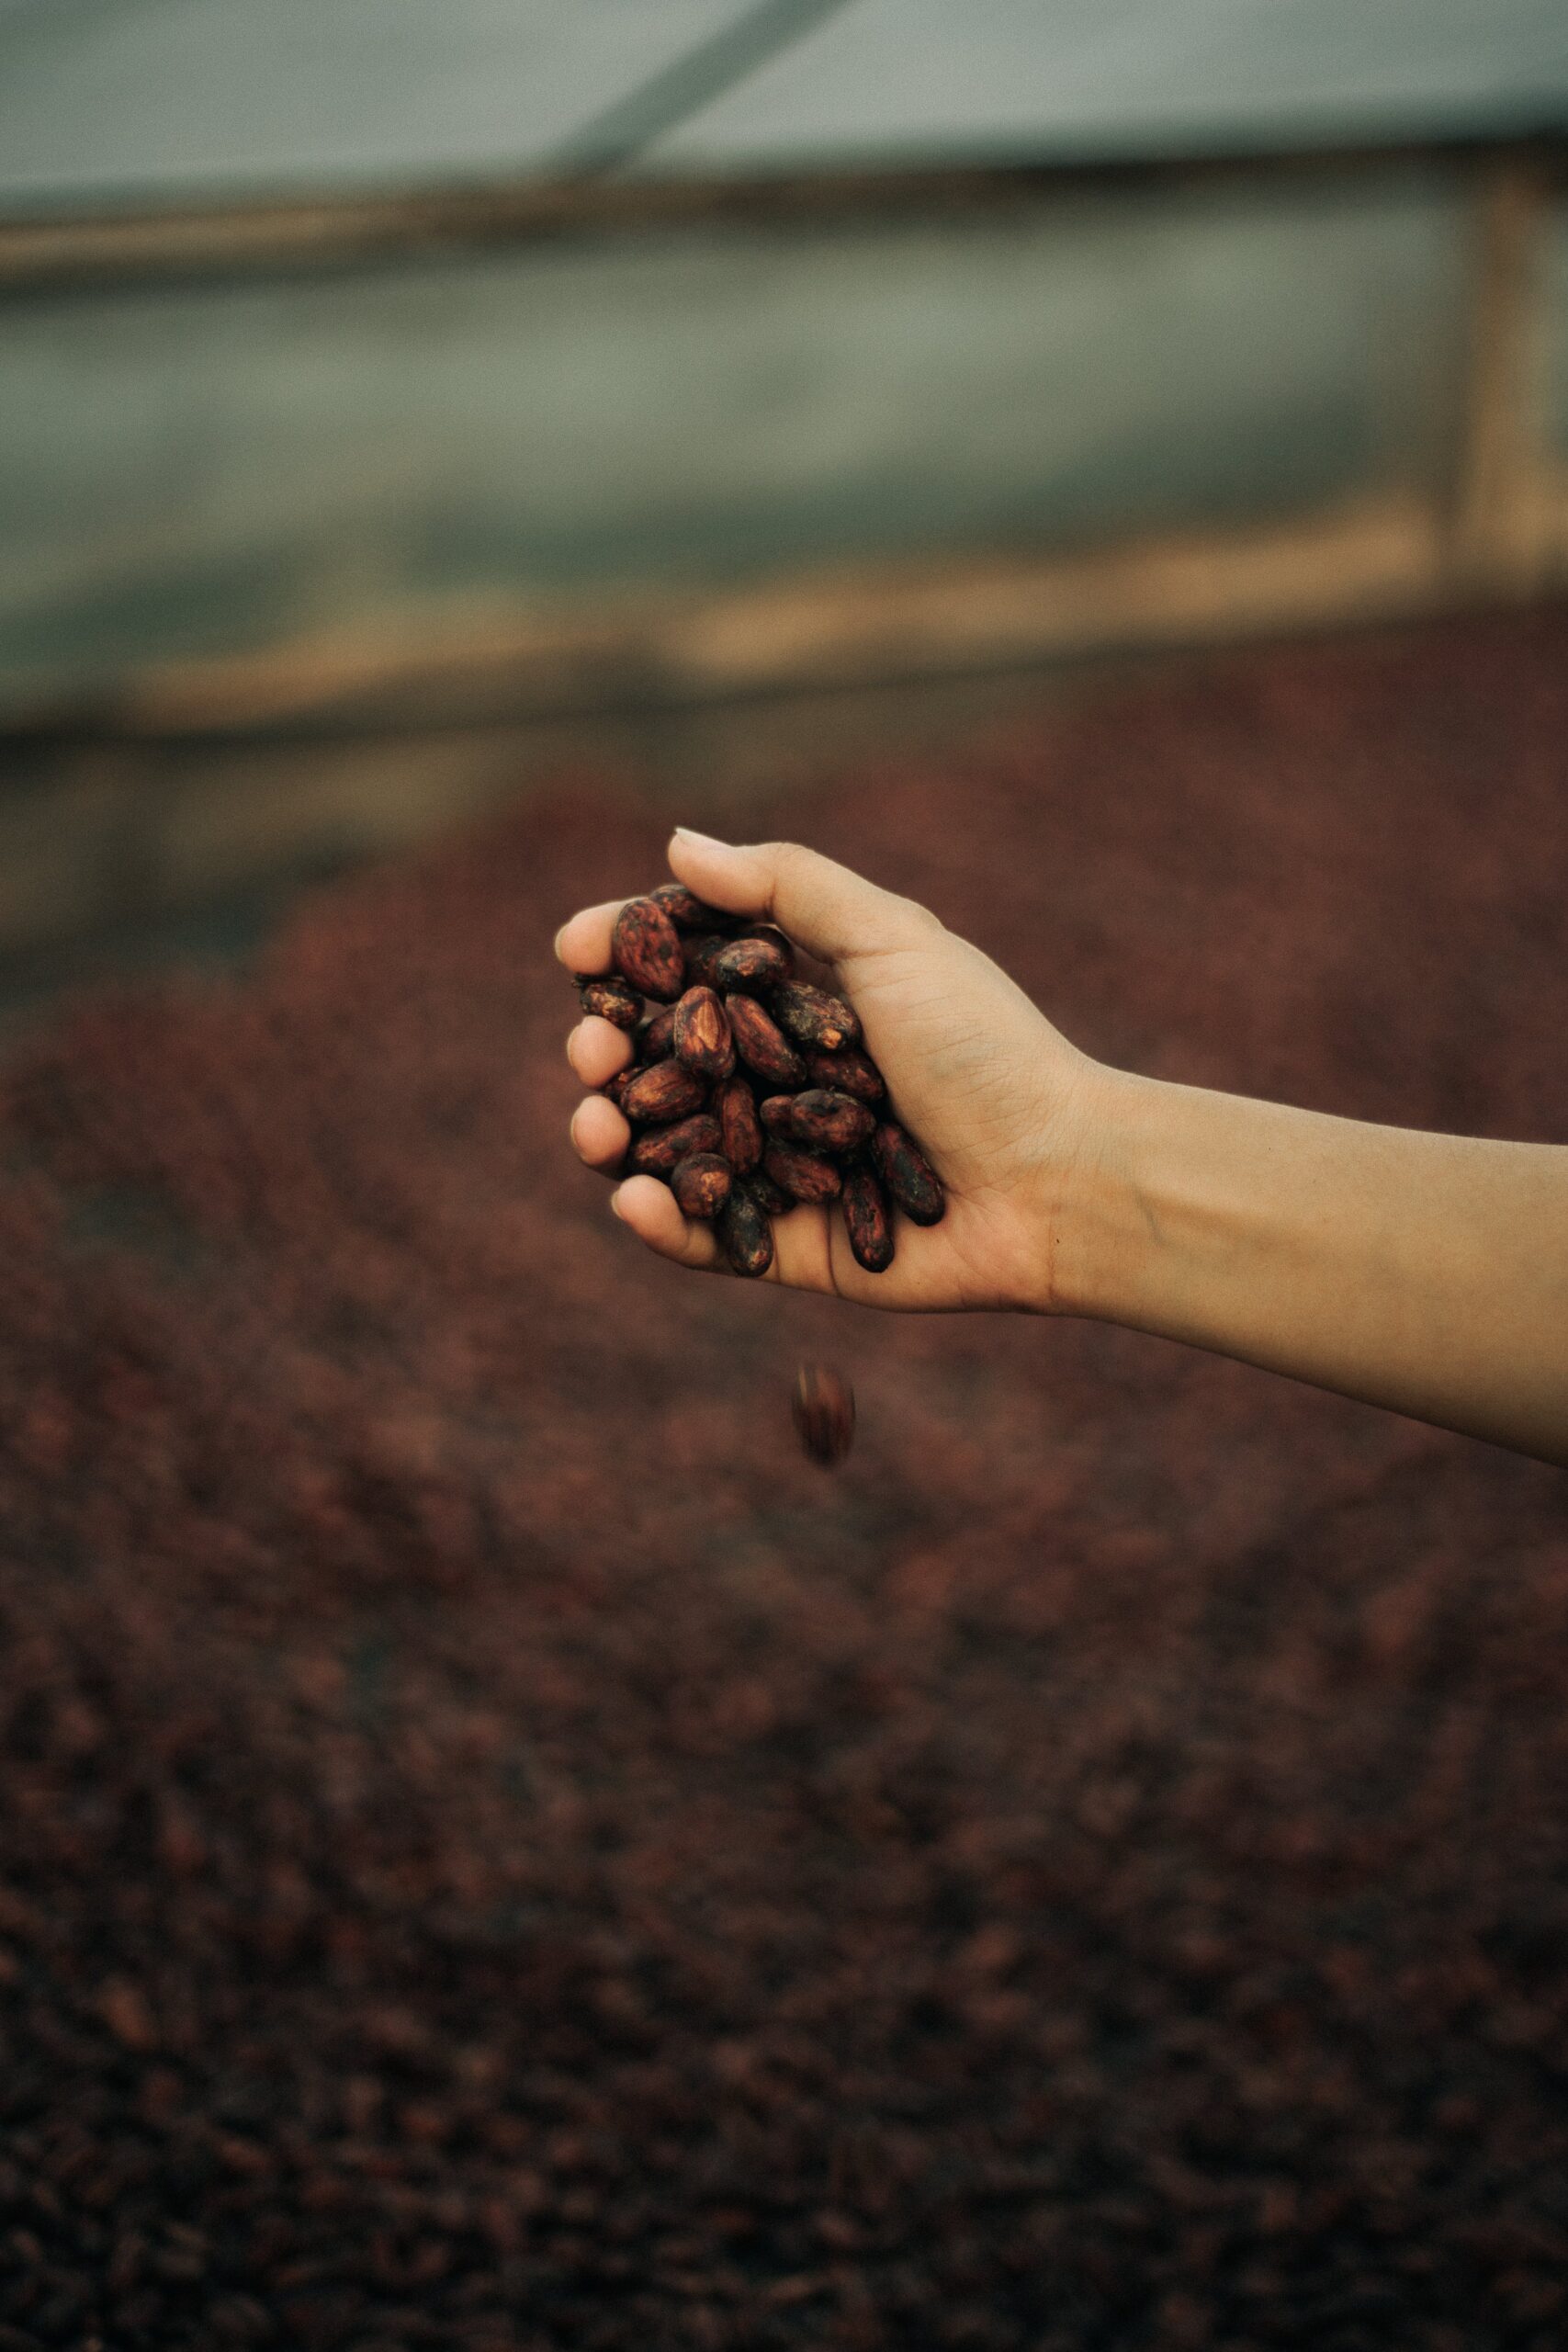 Nuove Prospettive sulla Feniletilamina (PEA): Un Approfondimento Tra Medicina e Benessere Psicologico, foto di Ioannes Marc, fave essicate di cacao